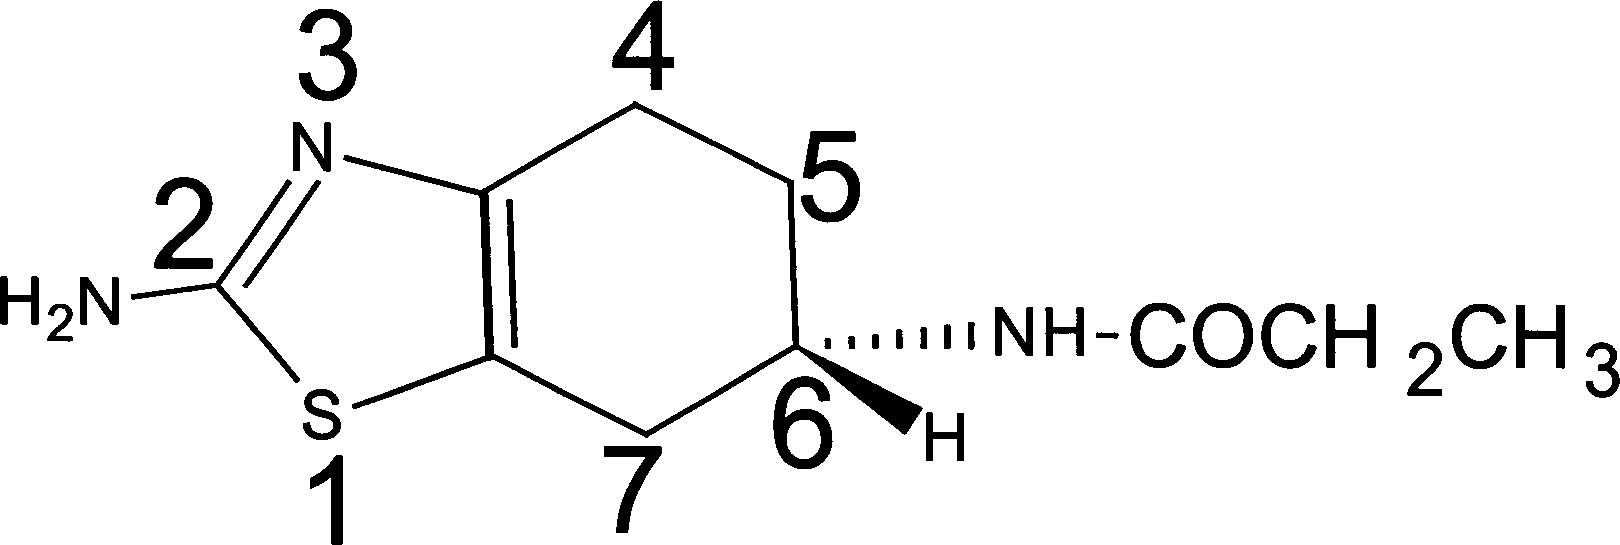 Synthesis of (-)-2-amino-6-propionamido tetrahydro benzothiazole